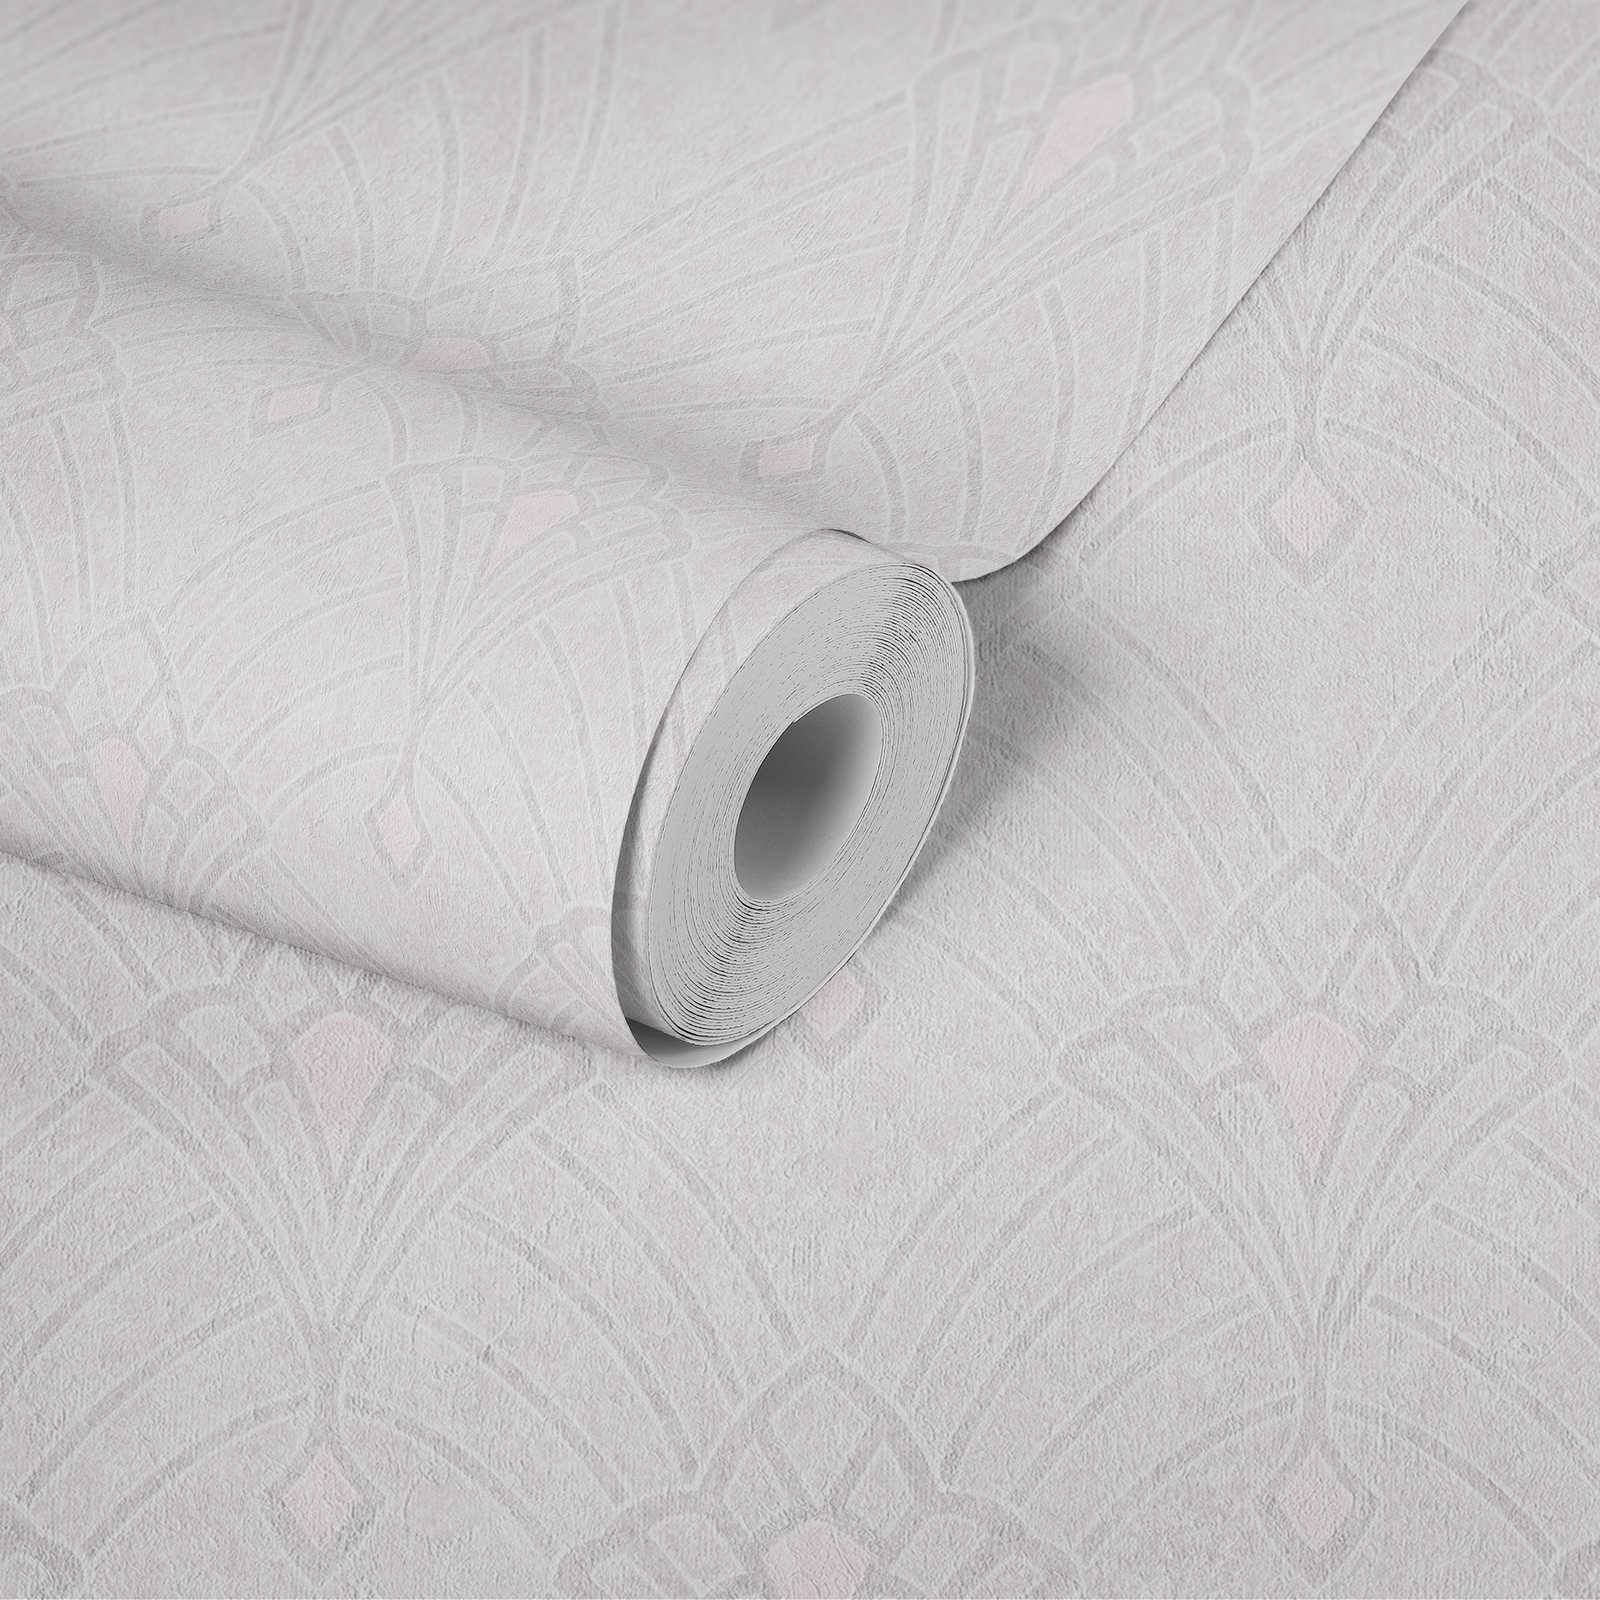             Art deco wallpaper with linen design & plaster look - cream
        